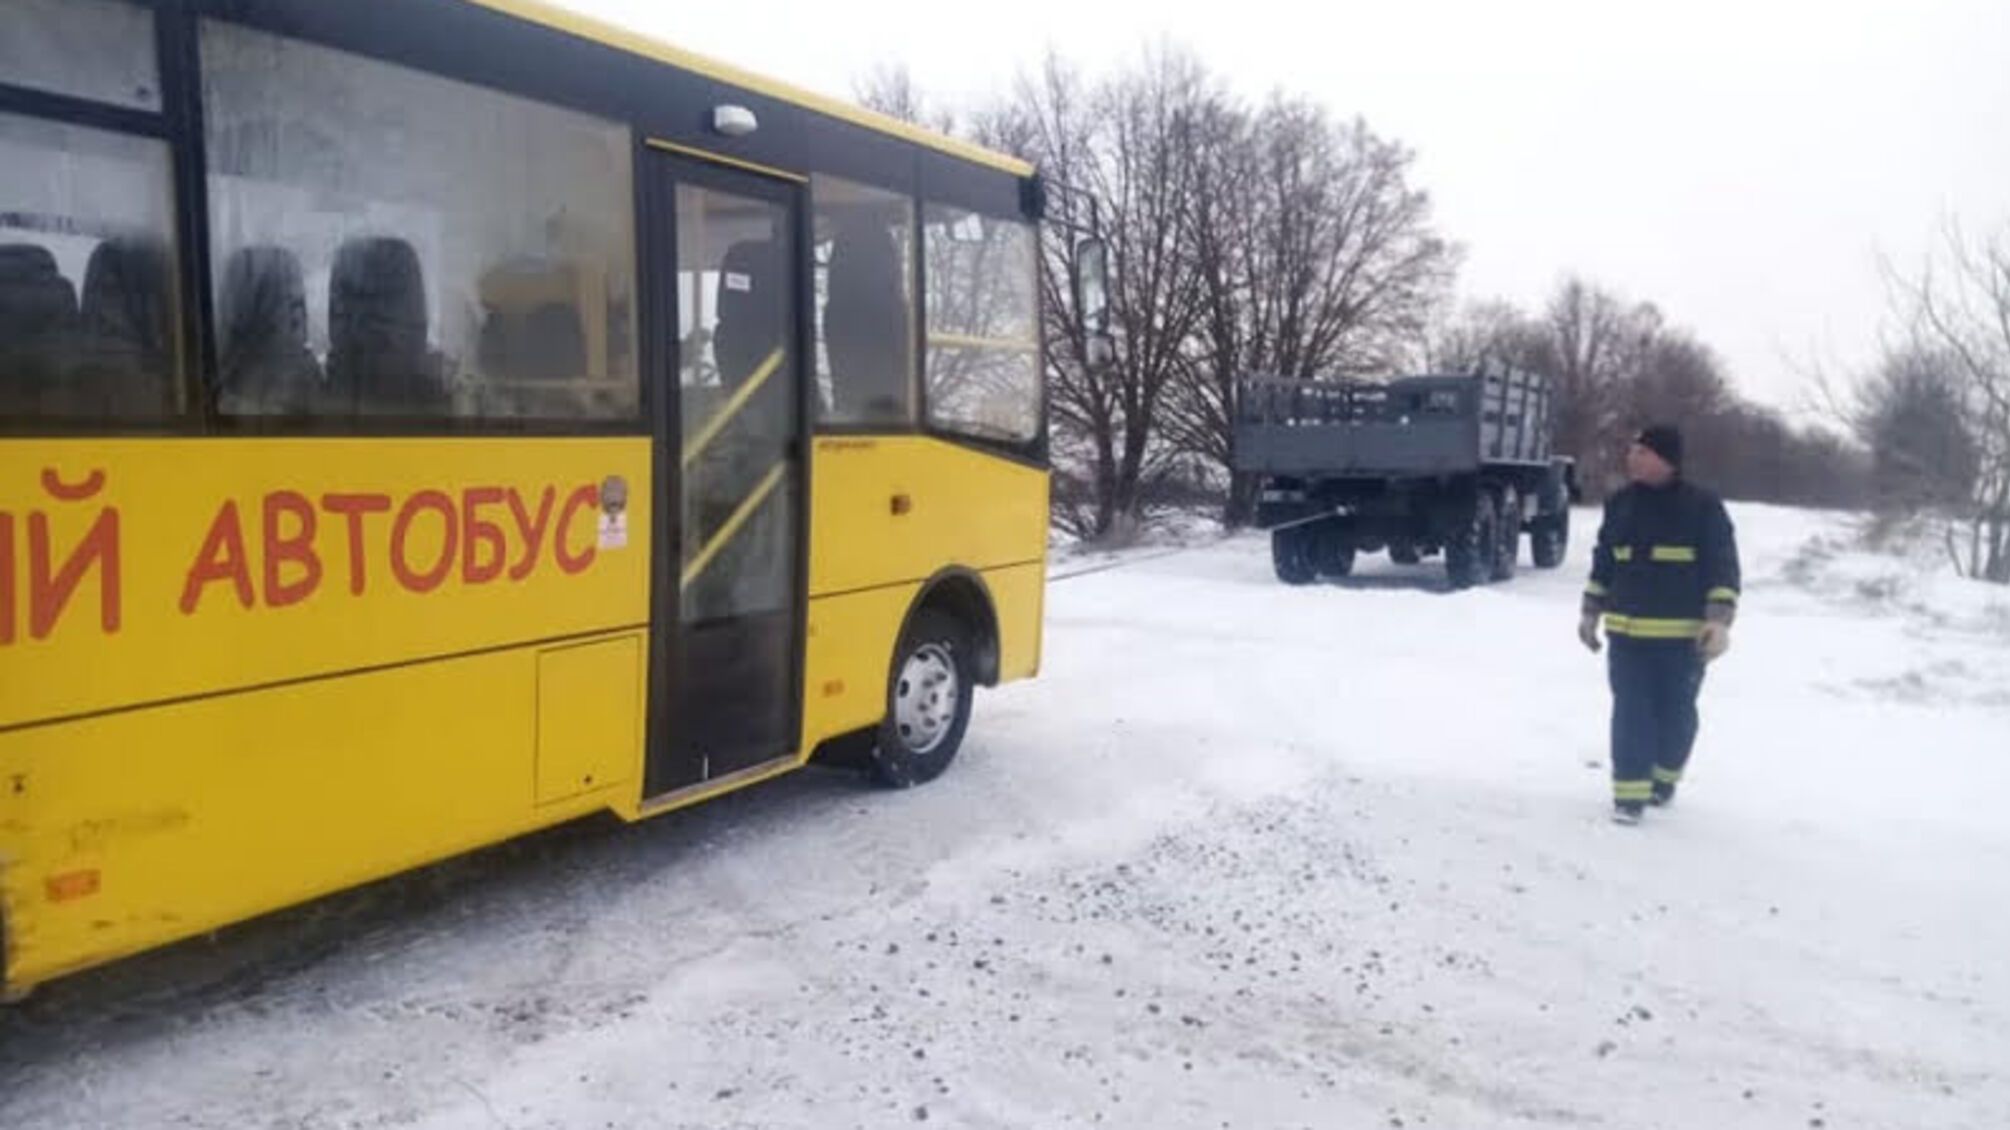 Рівненська область: Млинівські та Корецькі рятувальники надавали допомогу по буксируванню шкільних автобусів зі снігових заметів де перебували діти